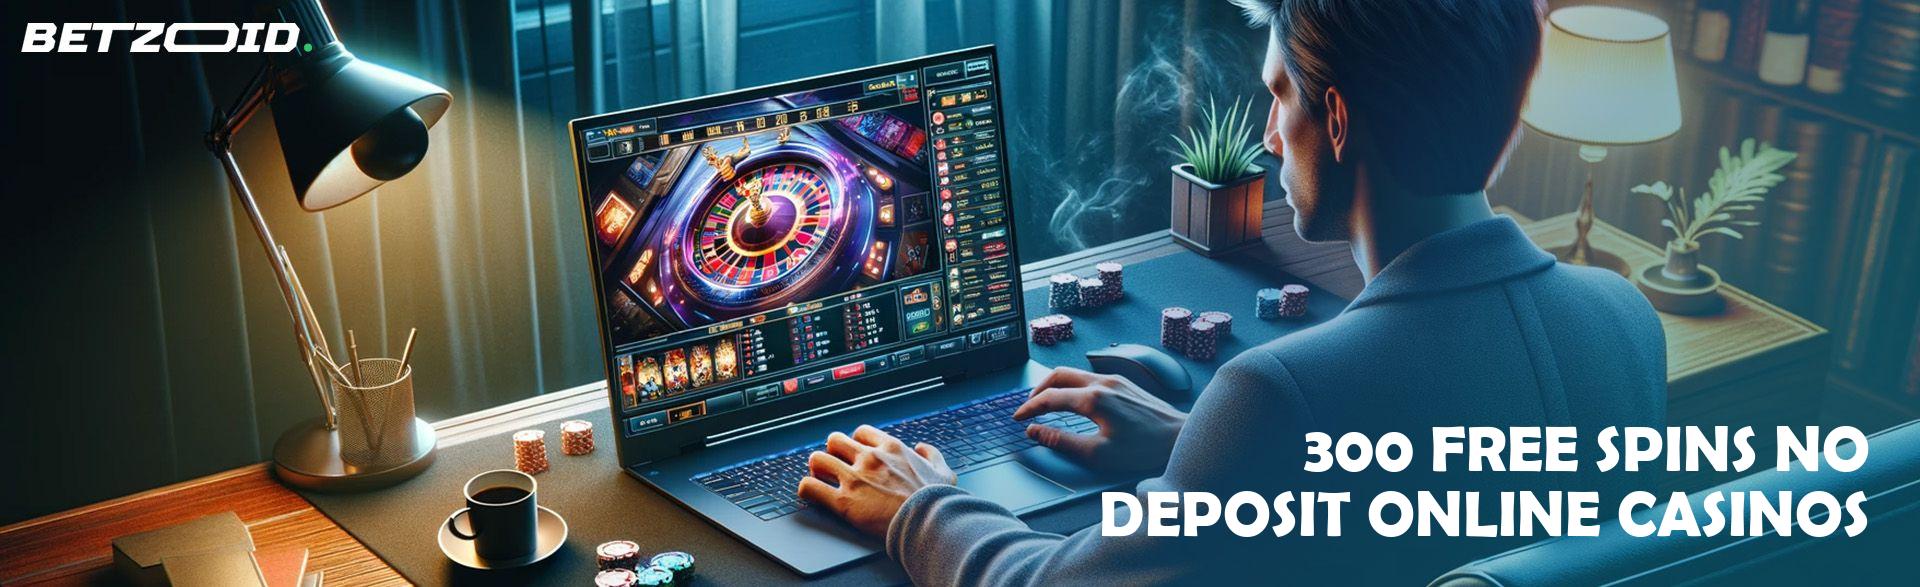 300 Free Spins No Deposit Online Casinos.